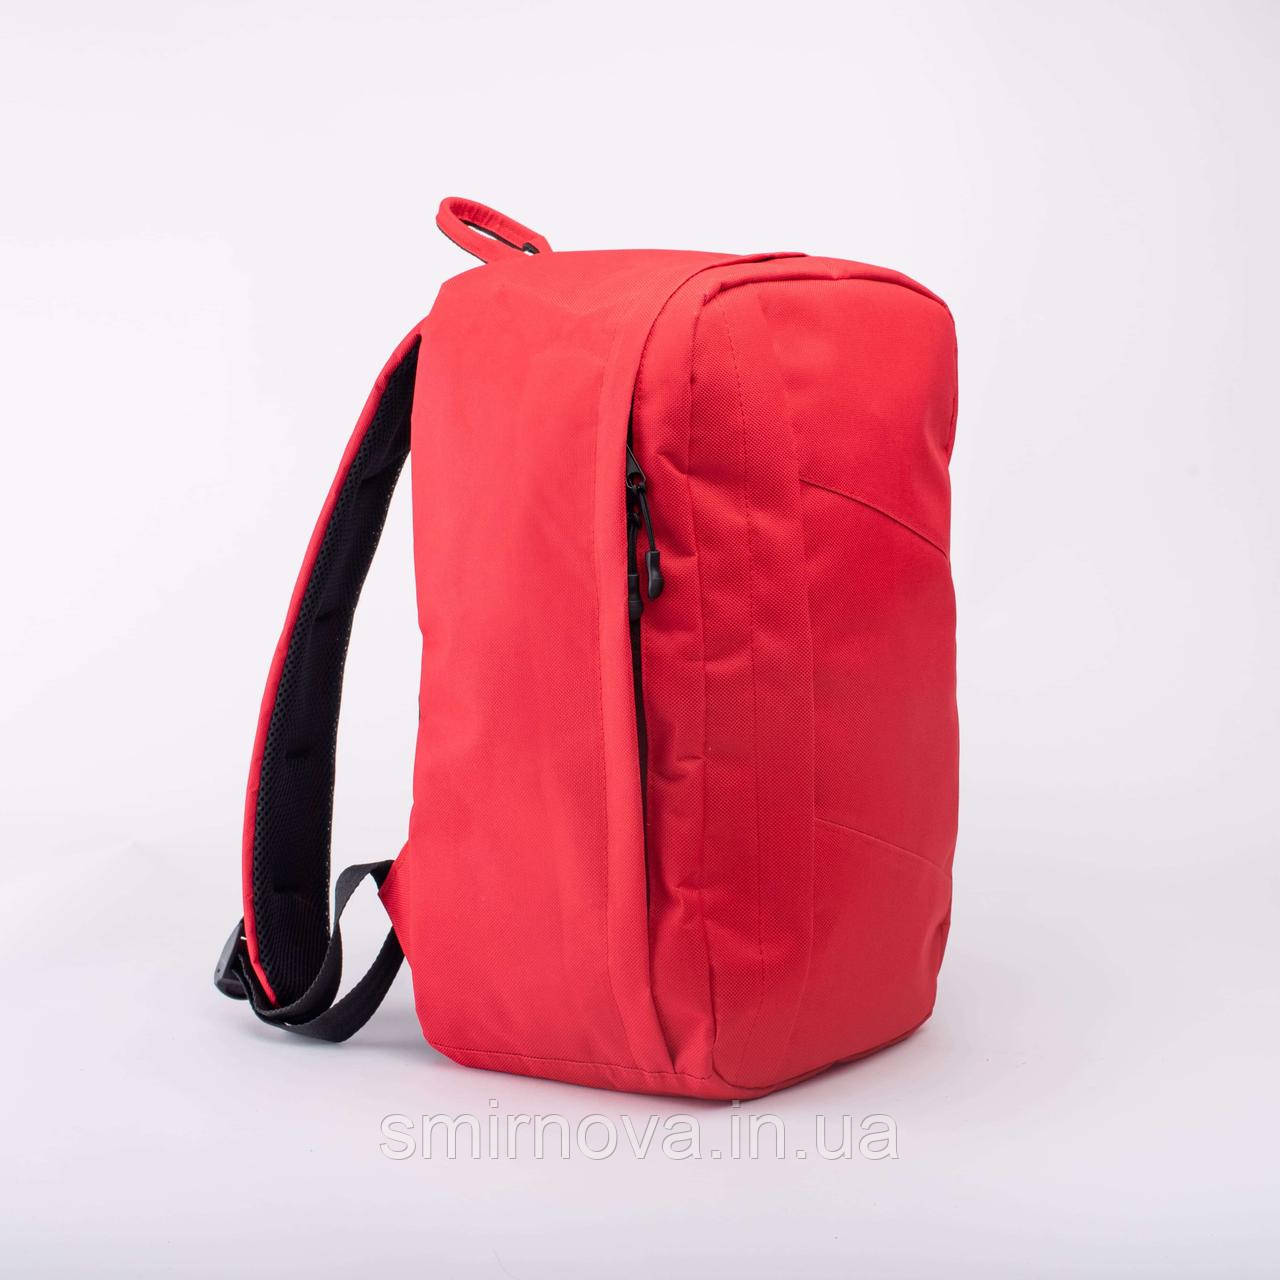 Рюкзак ручна поклажа червоний, 40 х 25 х 20, для ryanair, wizzair, lauda